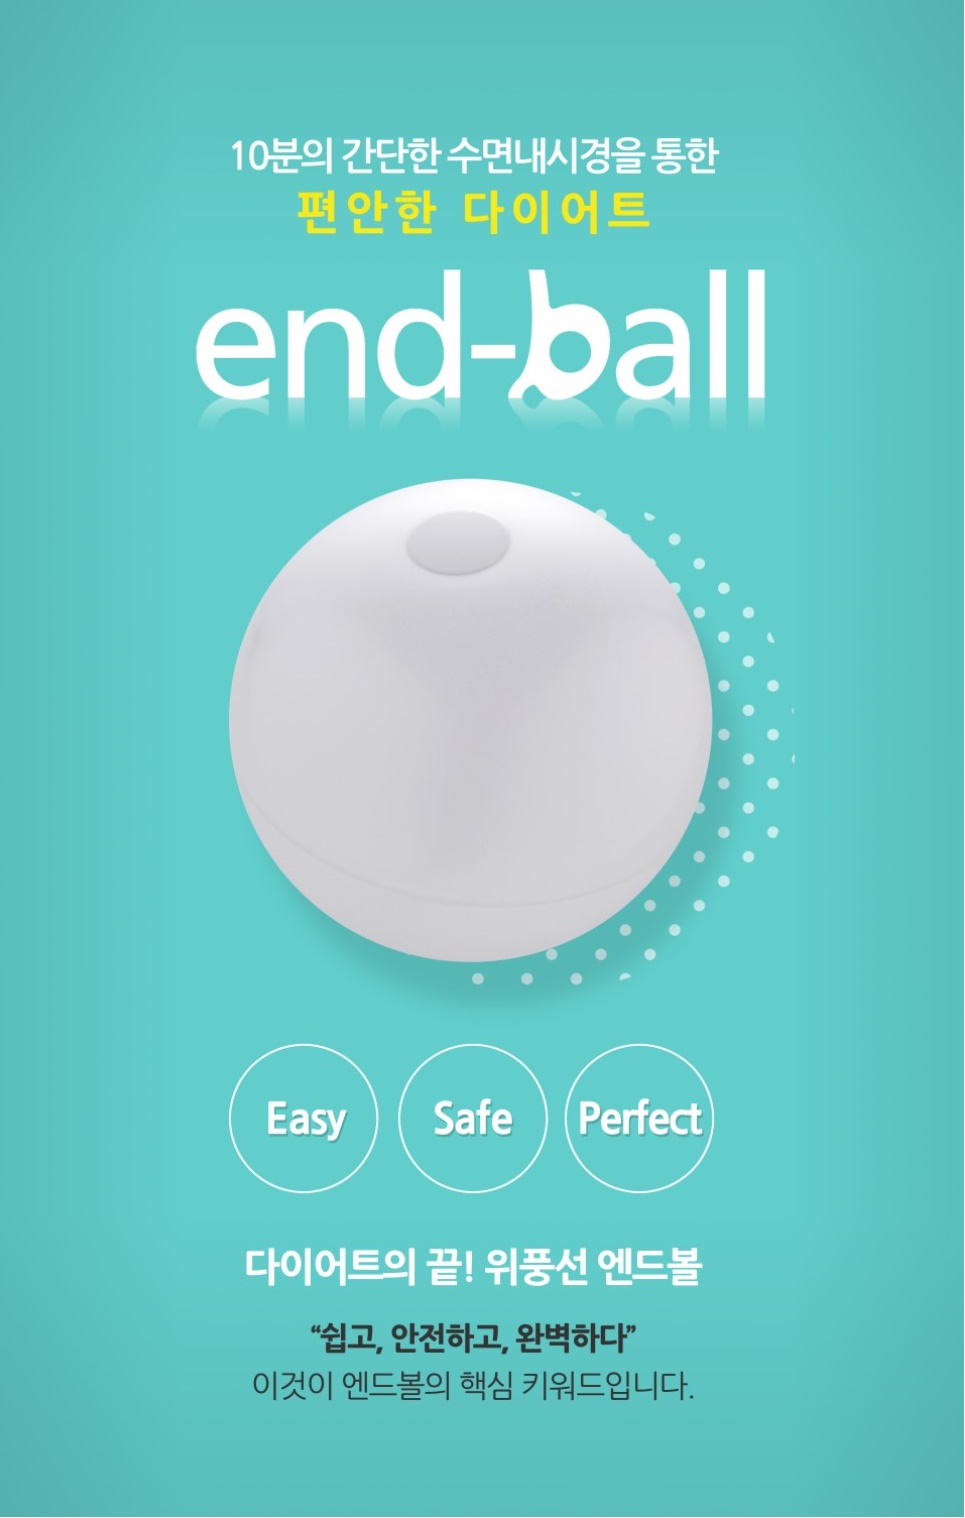 [2020 프리미엄브랜드대상] 비만의료기기 브랜드, End-ball(엔드볼)